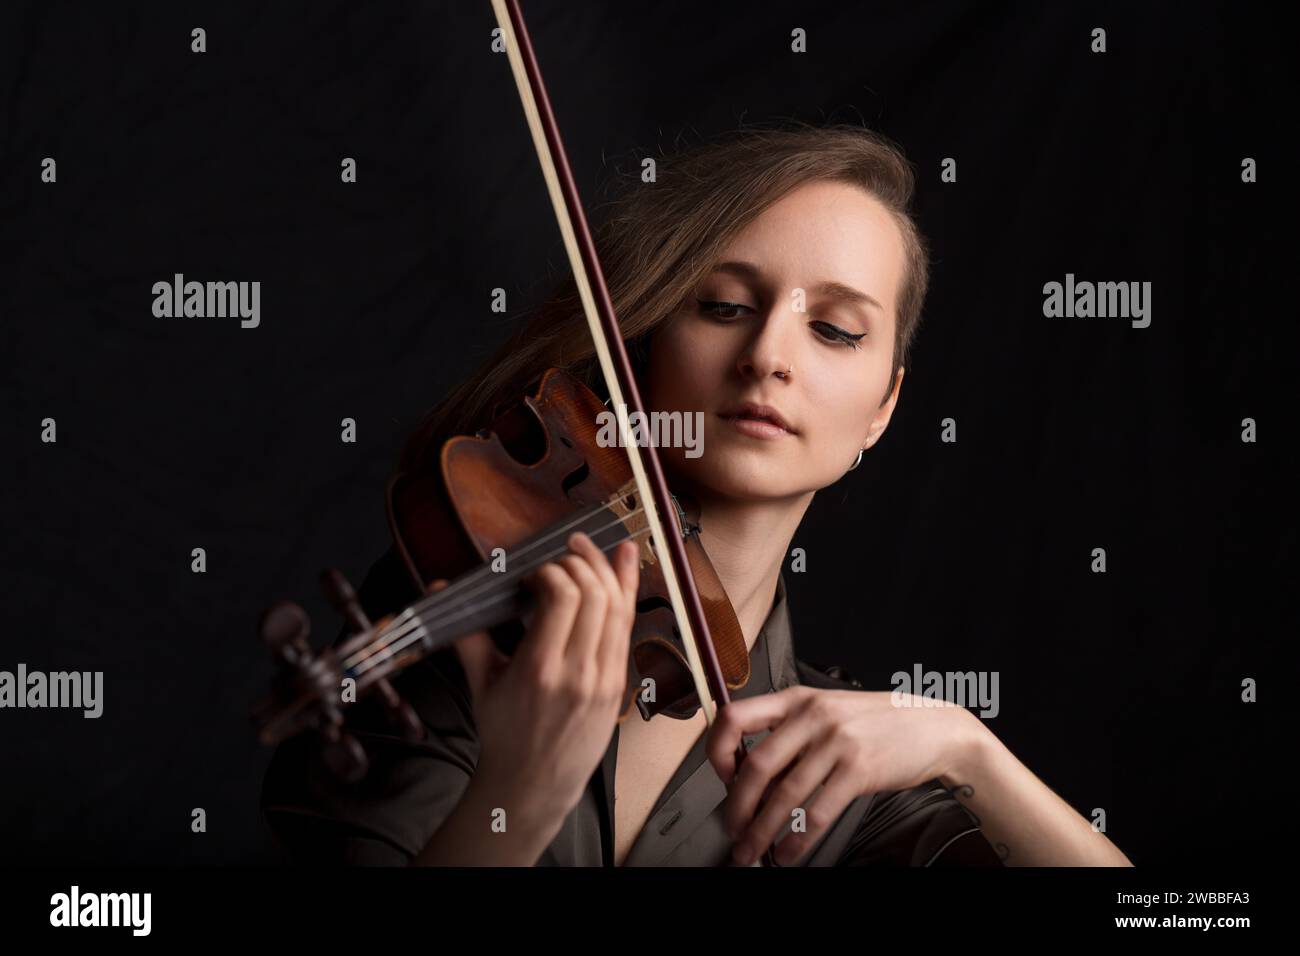 Les tons chauds du violon baroque remplissent l'air, joués avec passion et appréciation historique Banque D'Images